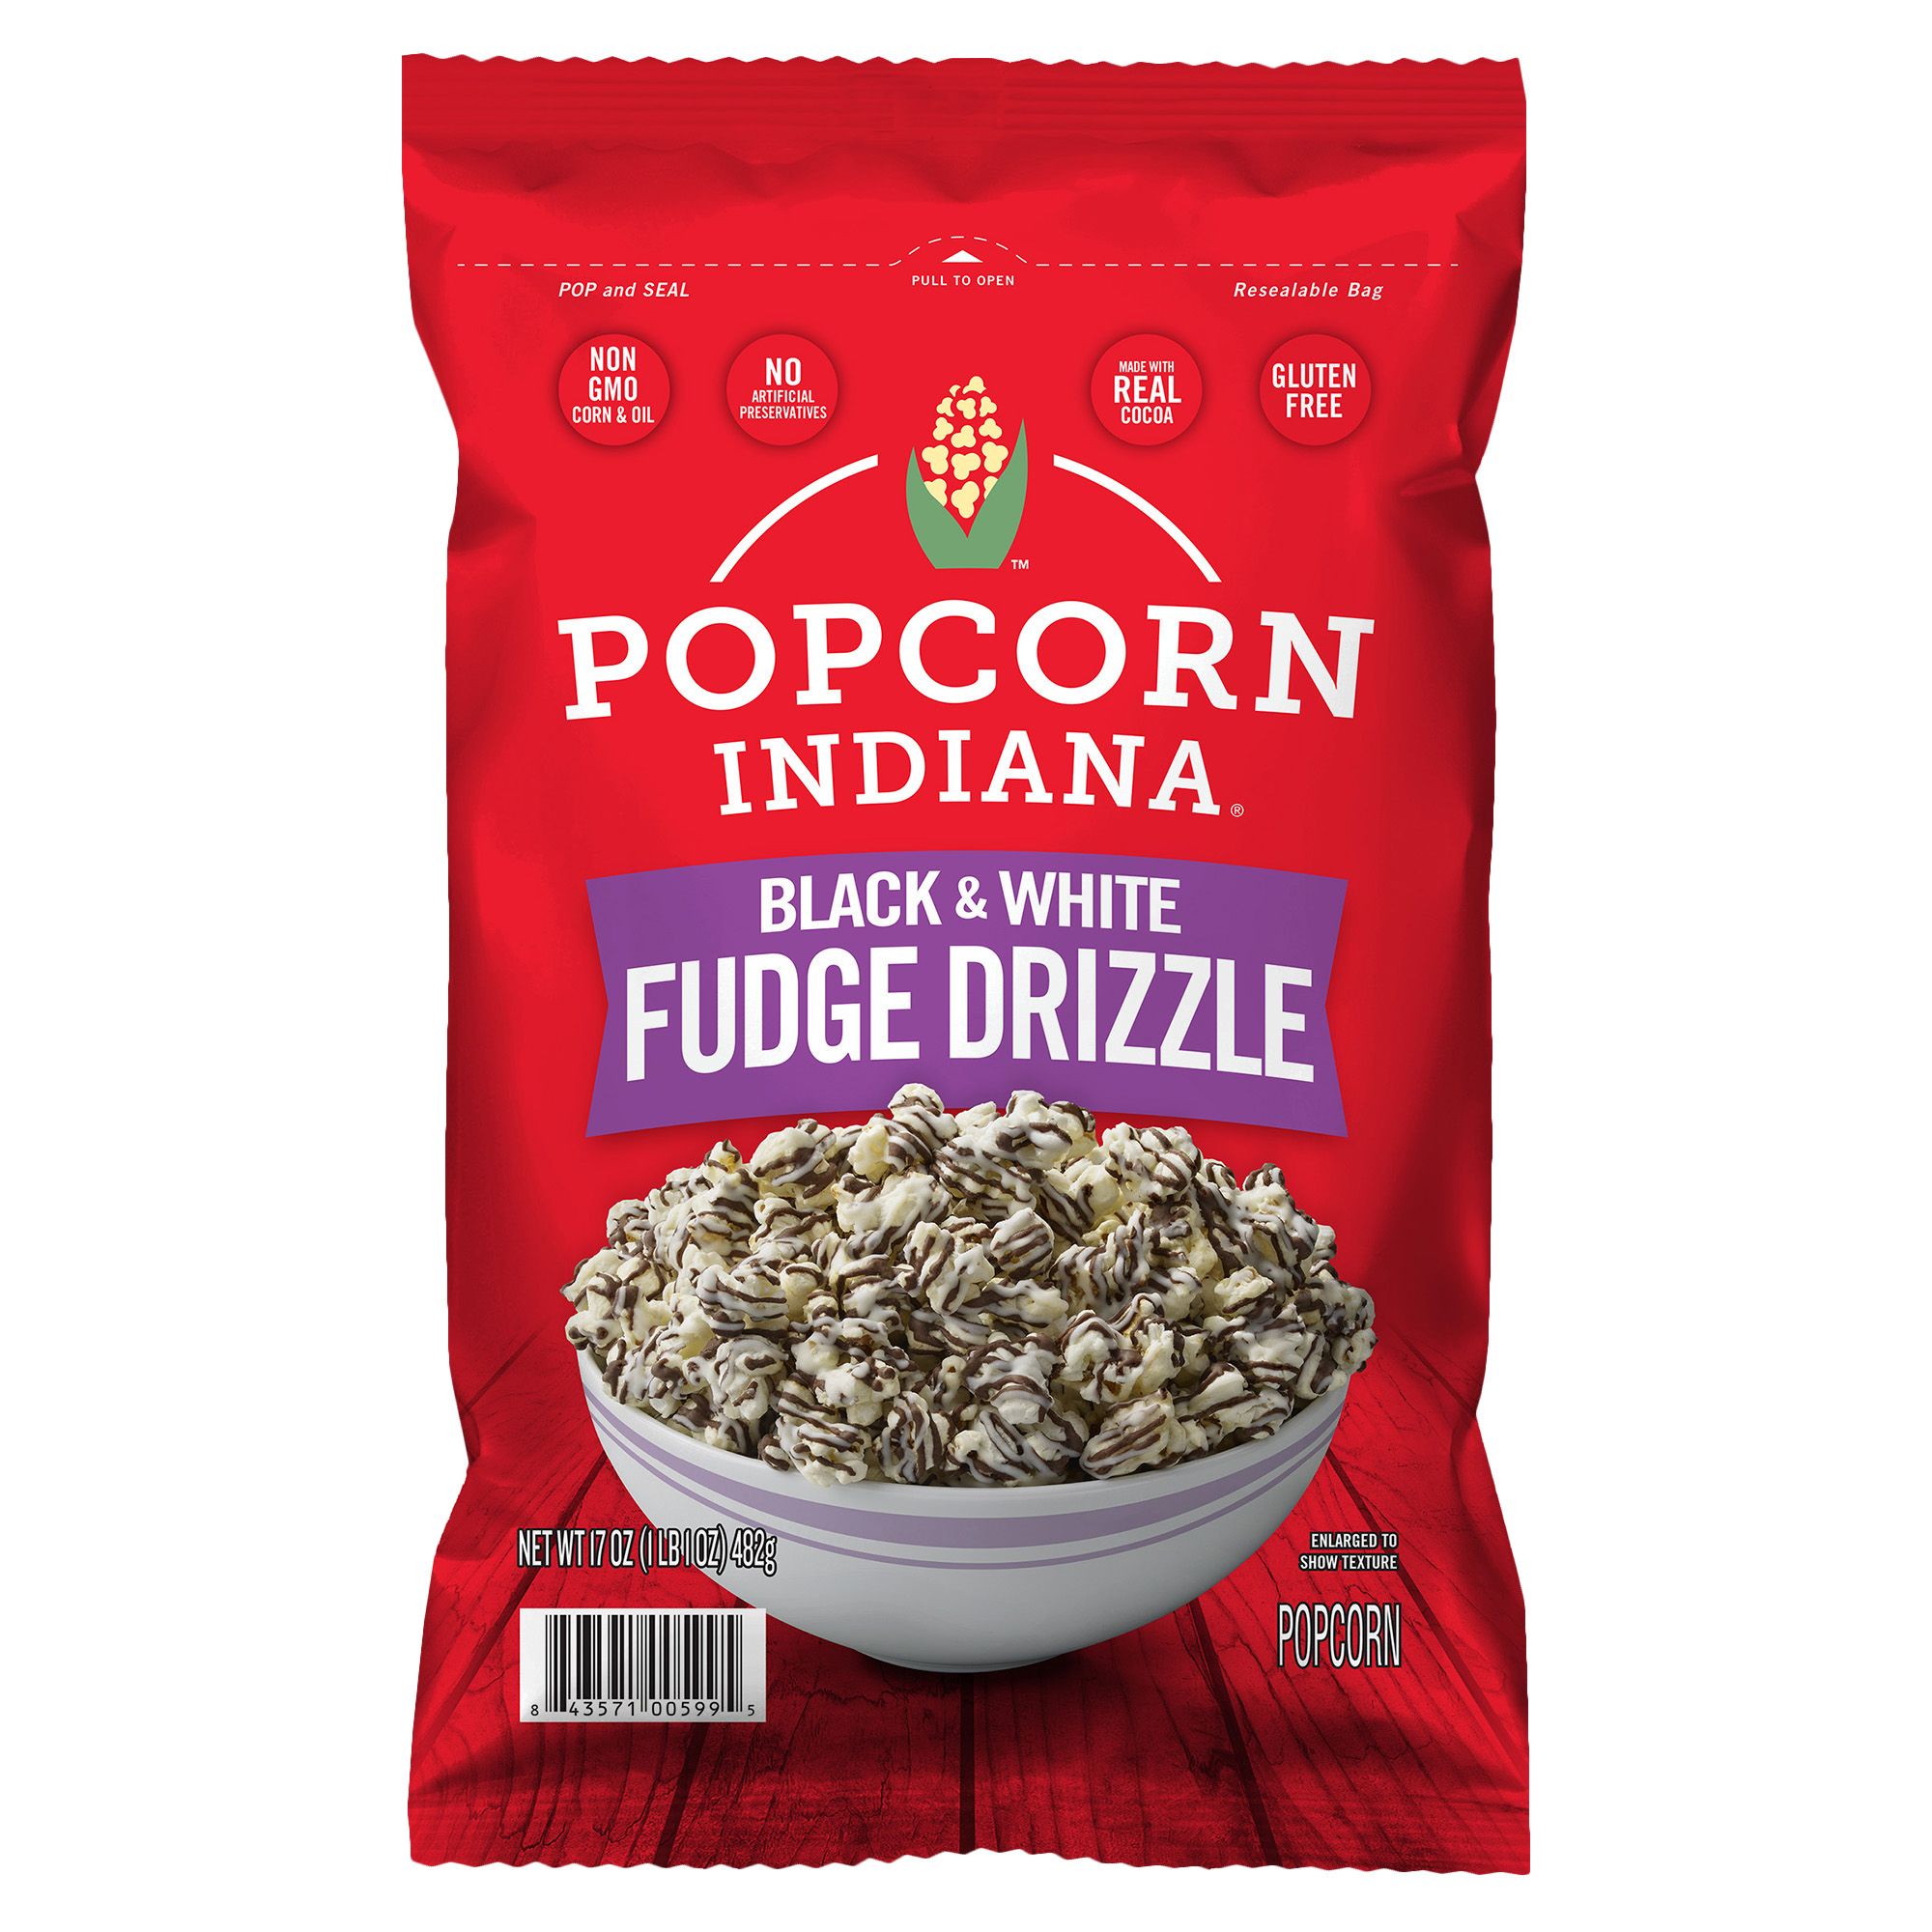 Popcorn Indiana Black and White Drizzlecorn, 17 oz.